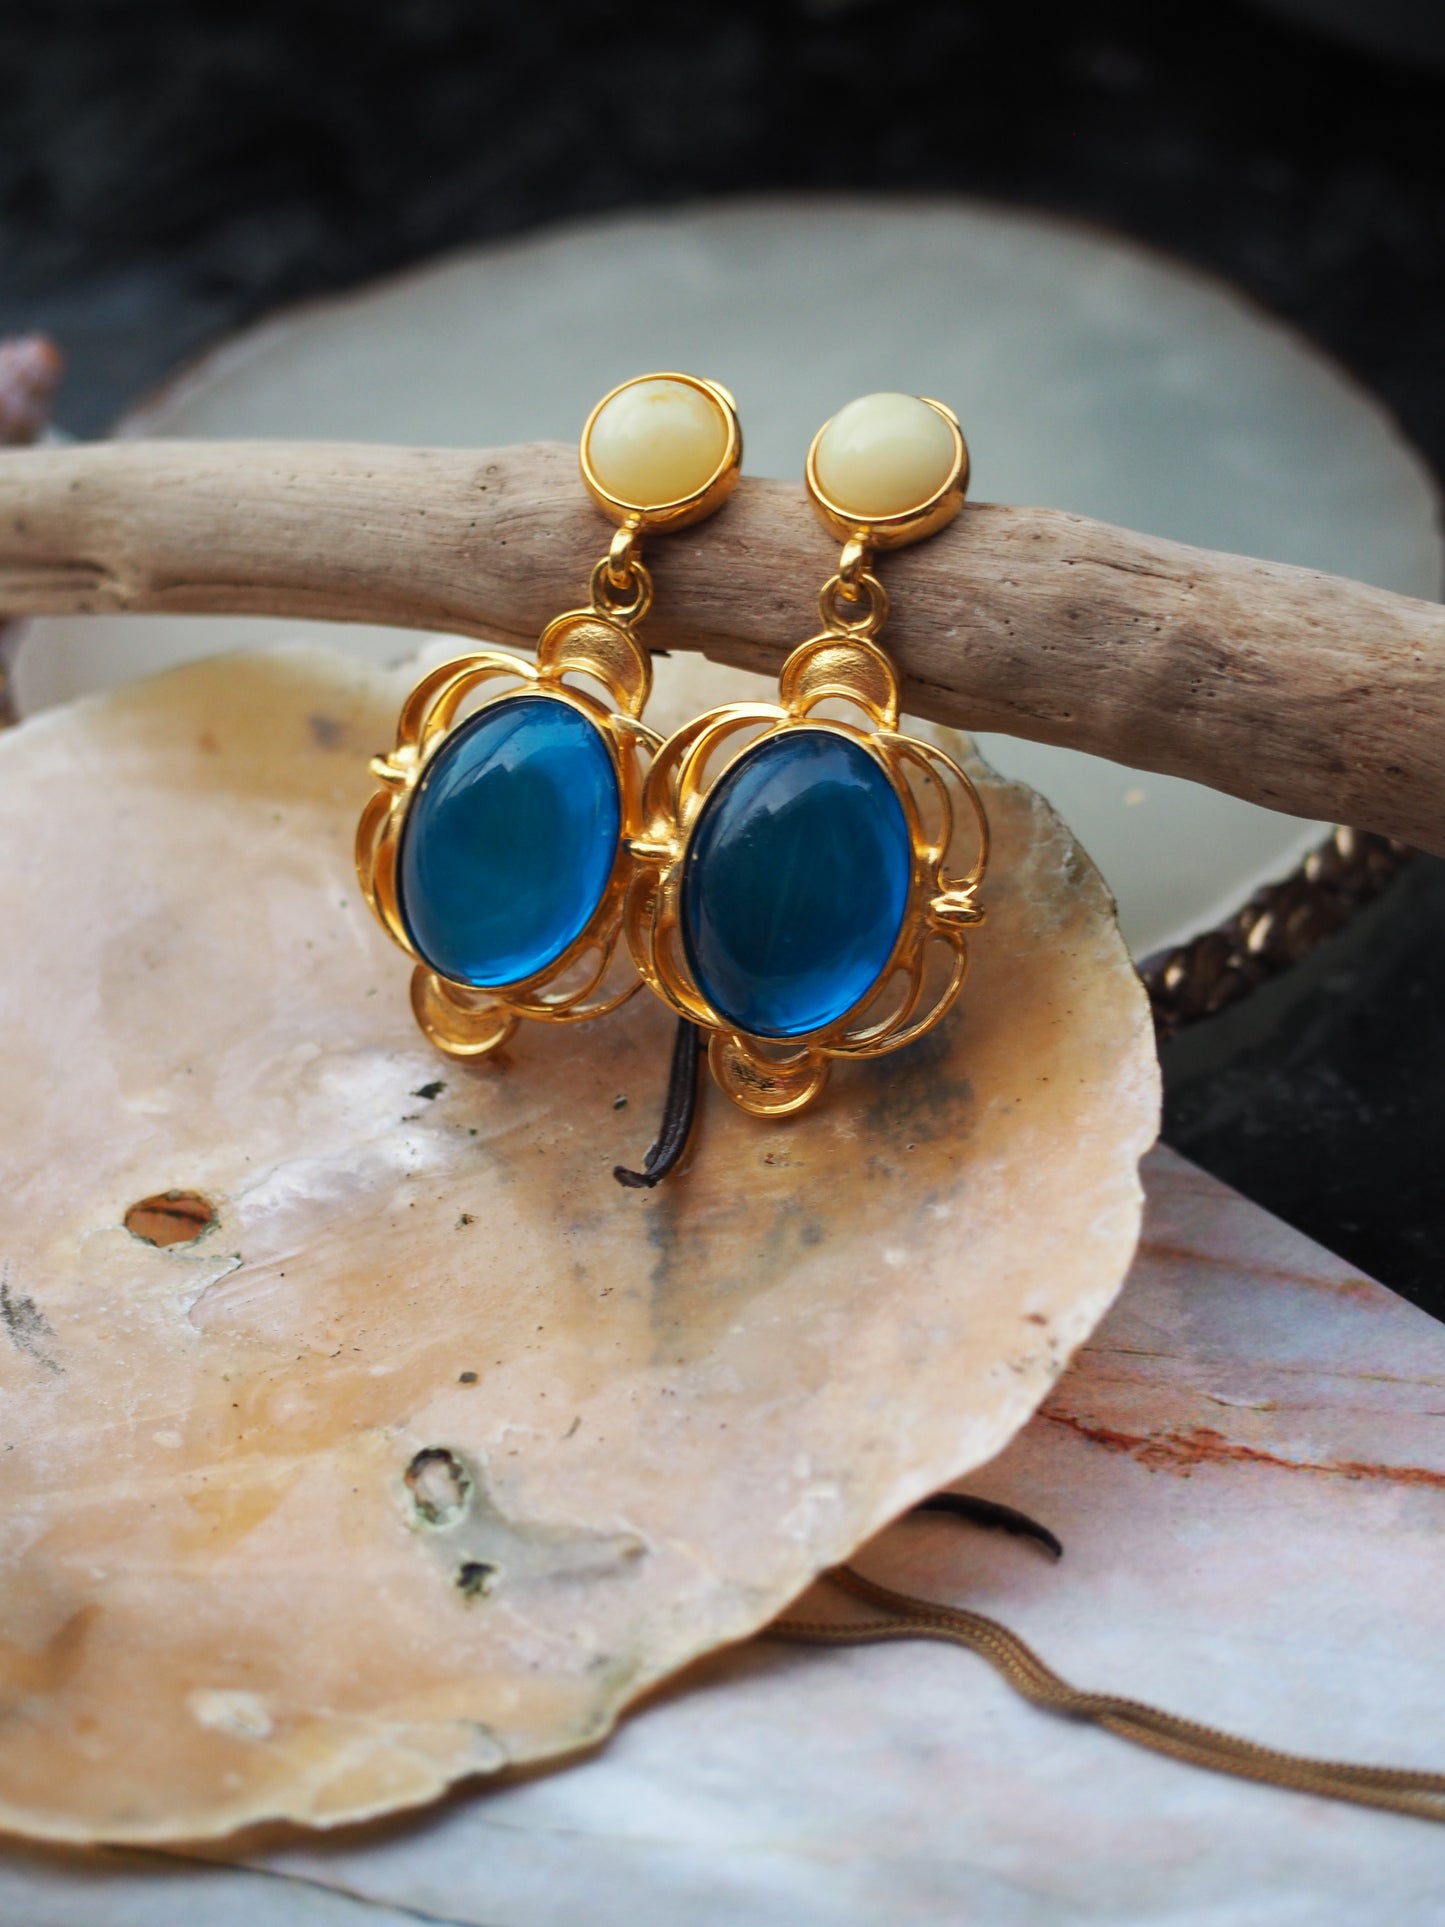 Blue & Milk Amber Earrings in 18k Gold Pleated Silver